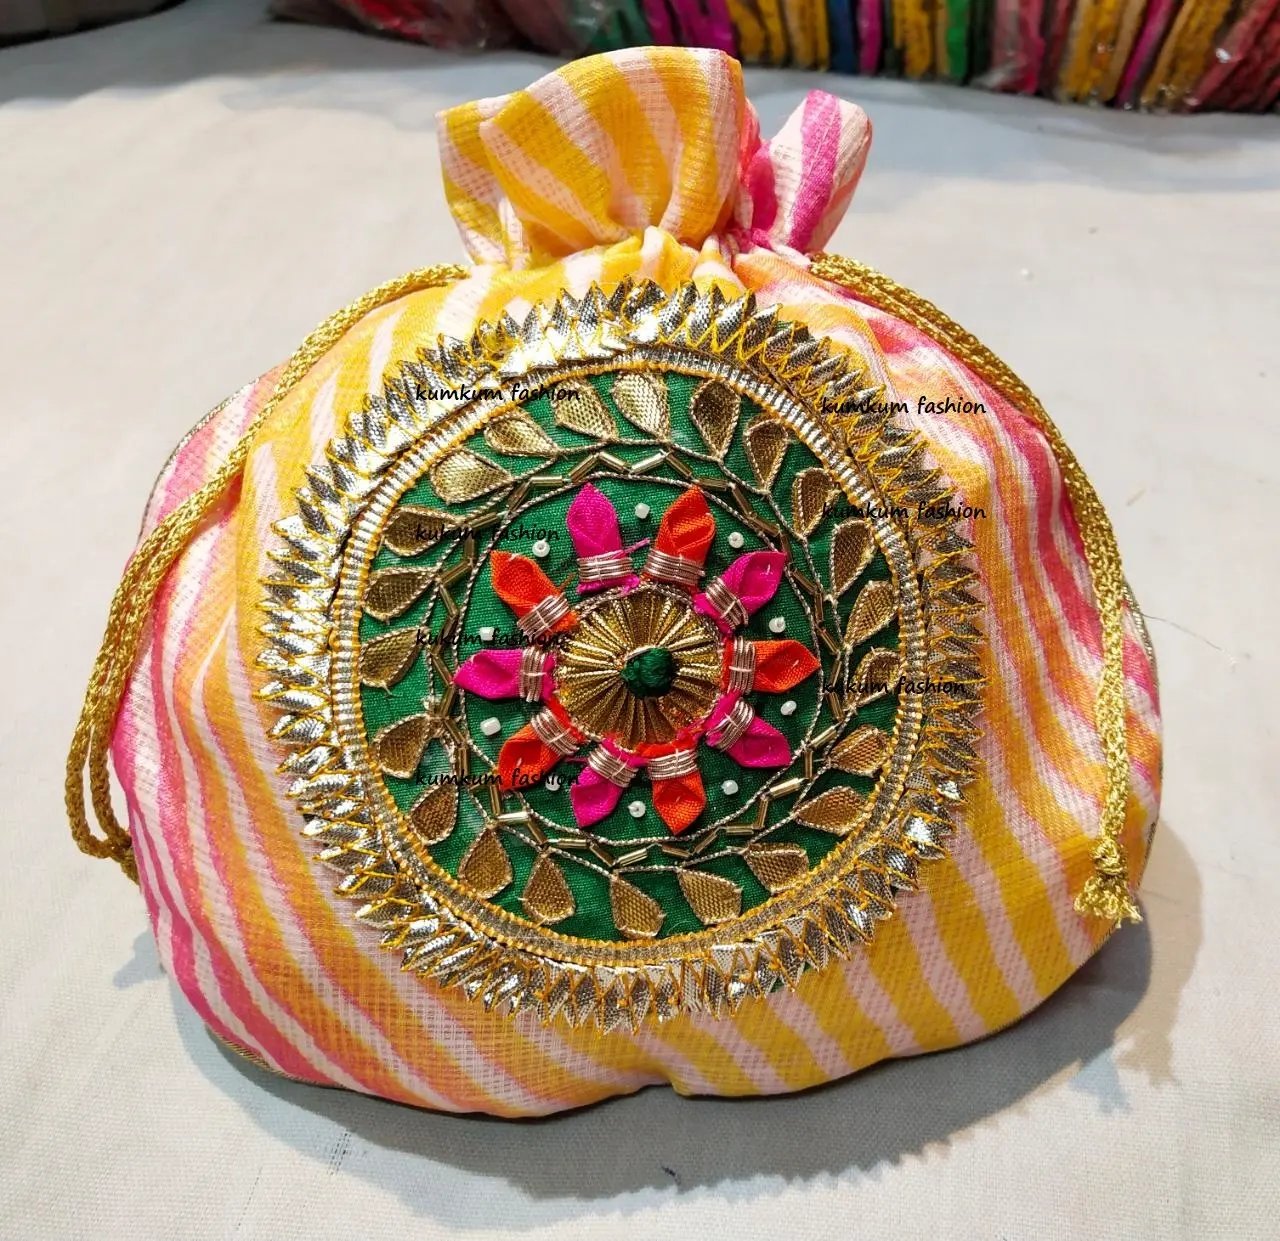 الهندي اليدوية القطن بوتلي حقائب امرأة براثن المجوهرات الهندية الحقائب سيدة المحافظ